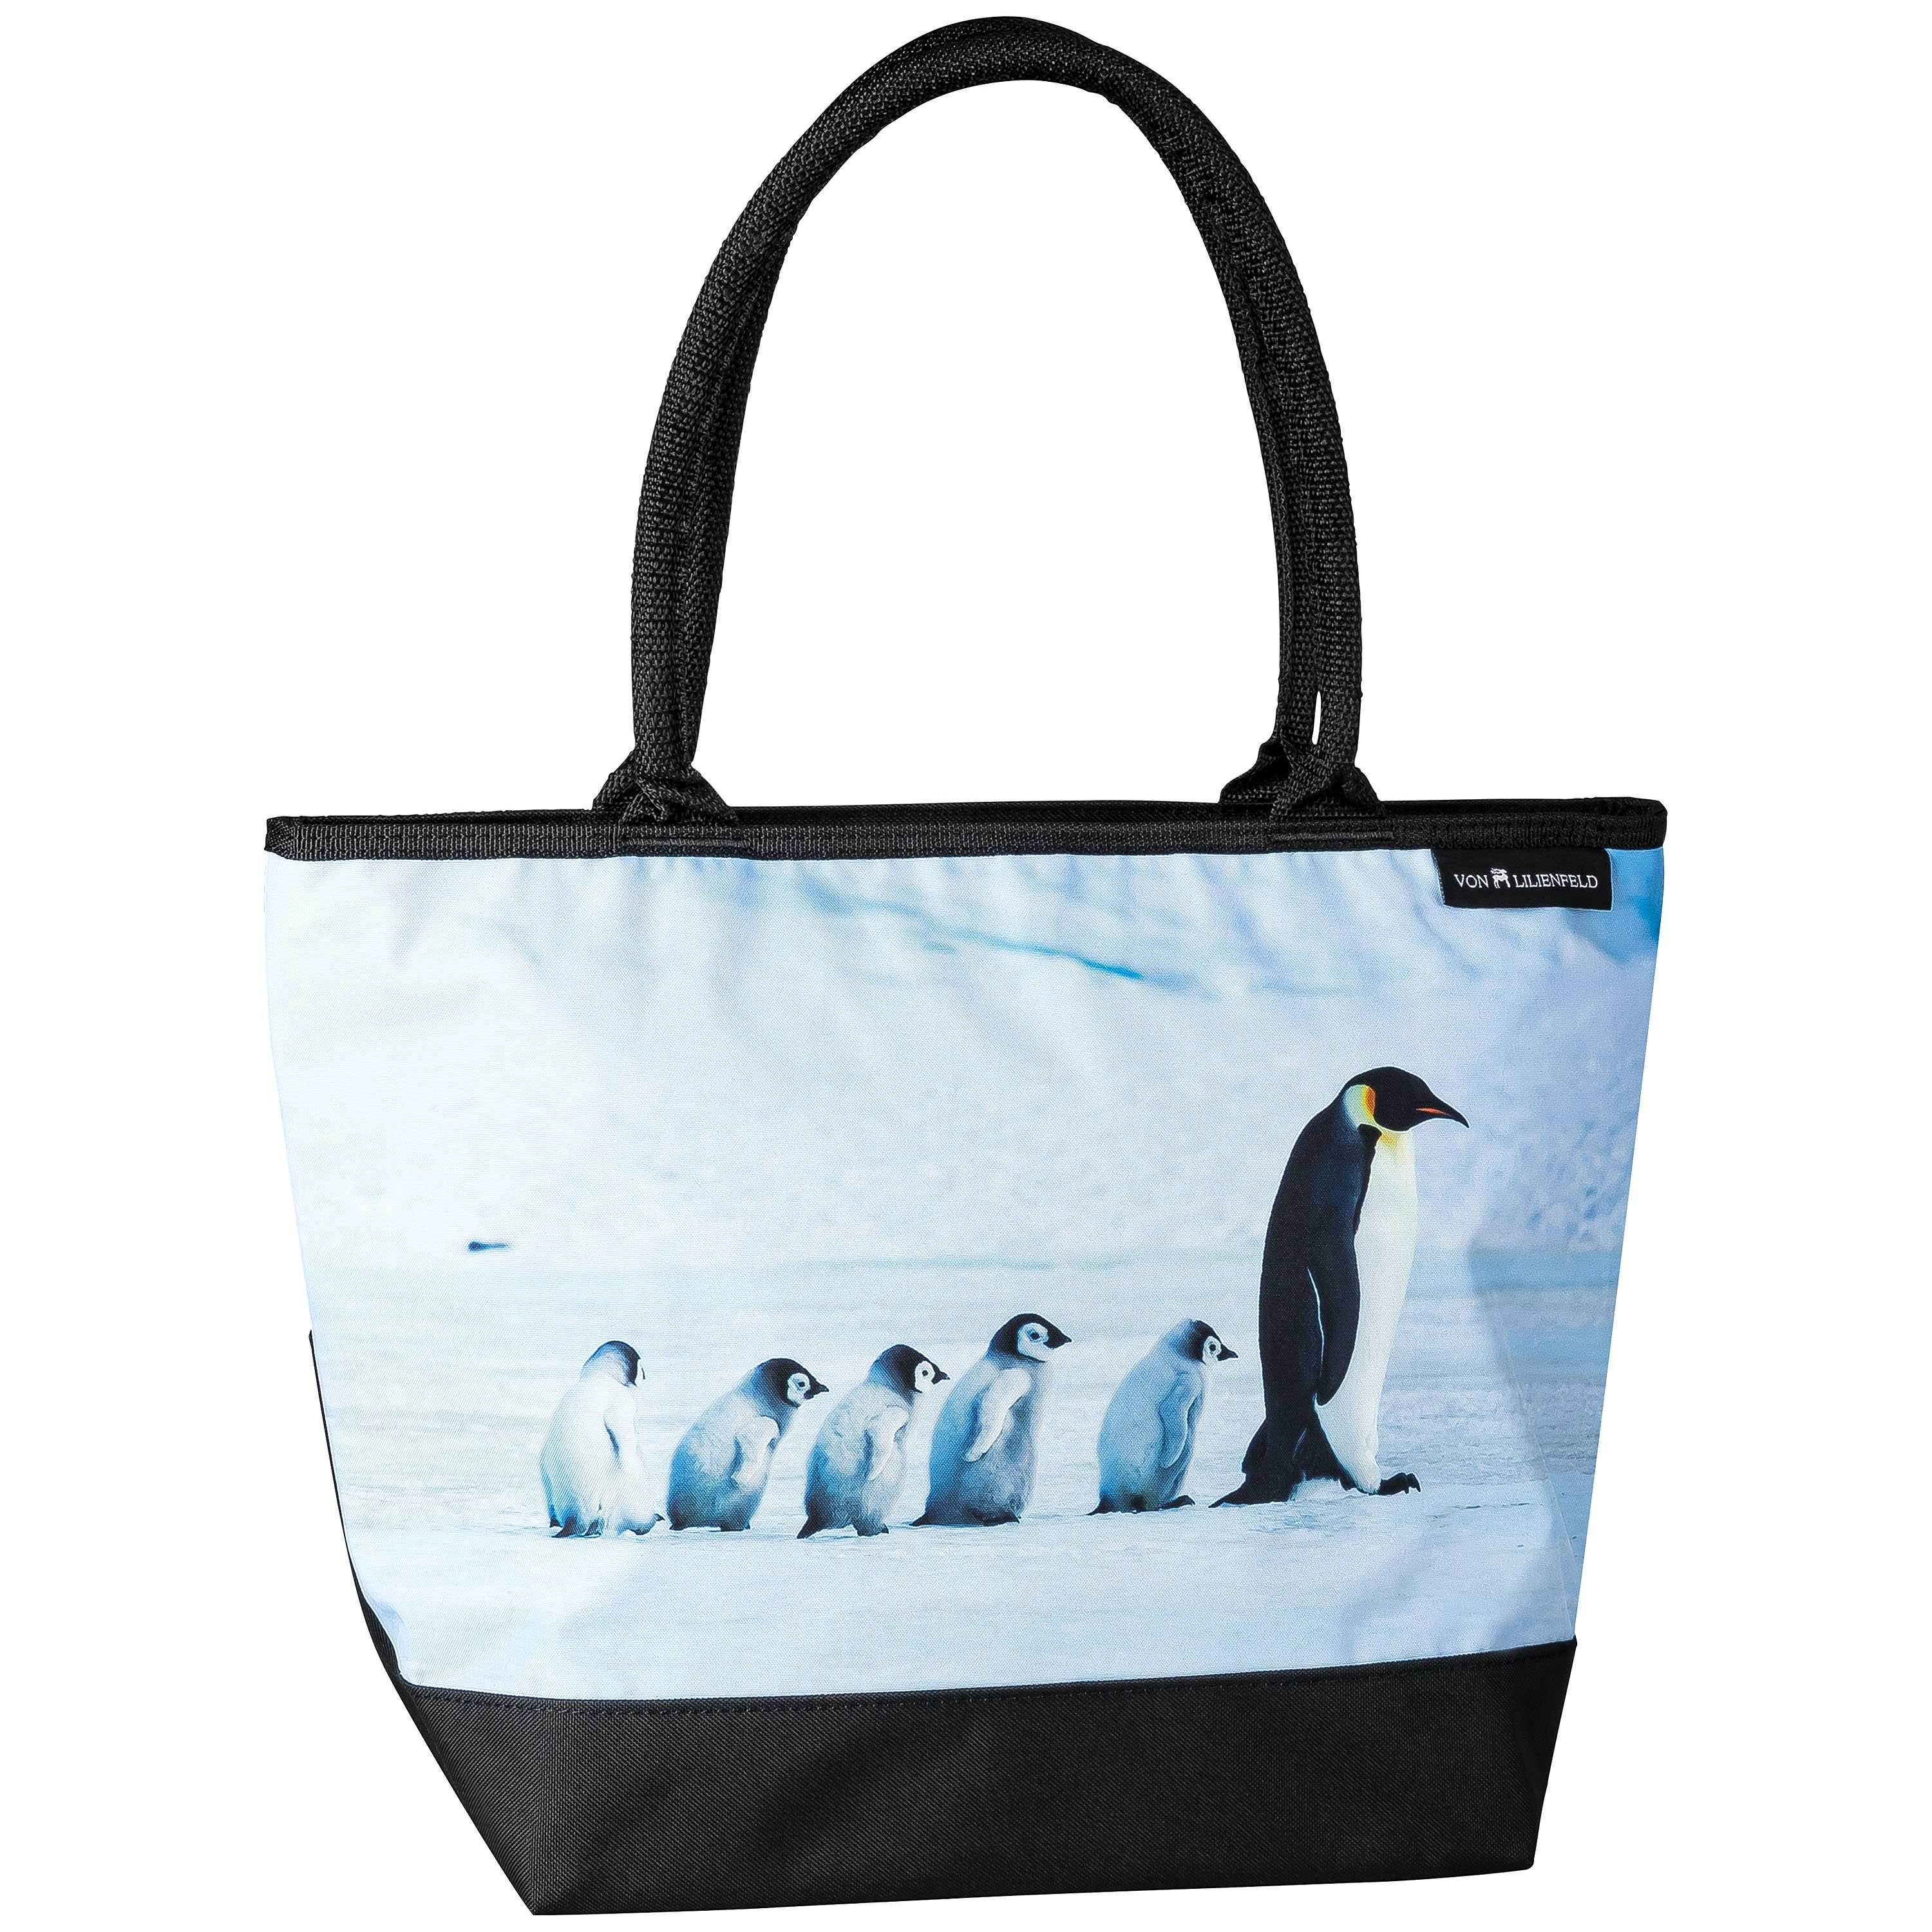 von Lilienfeld Shopper VON LILIENFELD Handtasche Damen Motiv Pinguine Vogel  Shopper Maße cm L42 x H30 x T15 Strandtasche Henkeltasche Büro, Tiermotiv